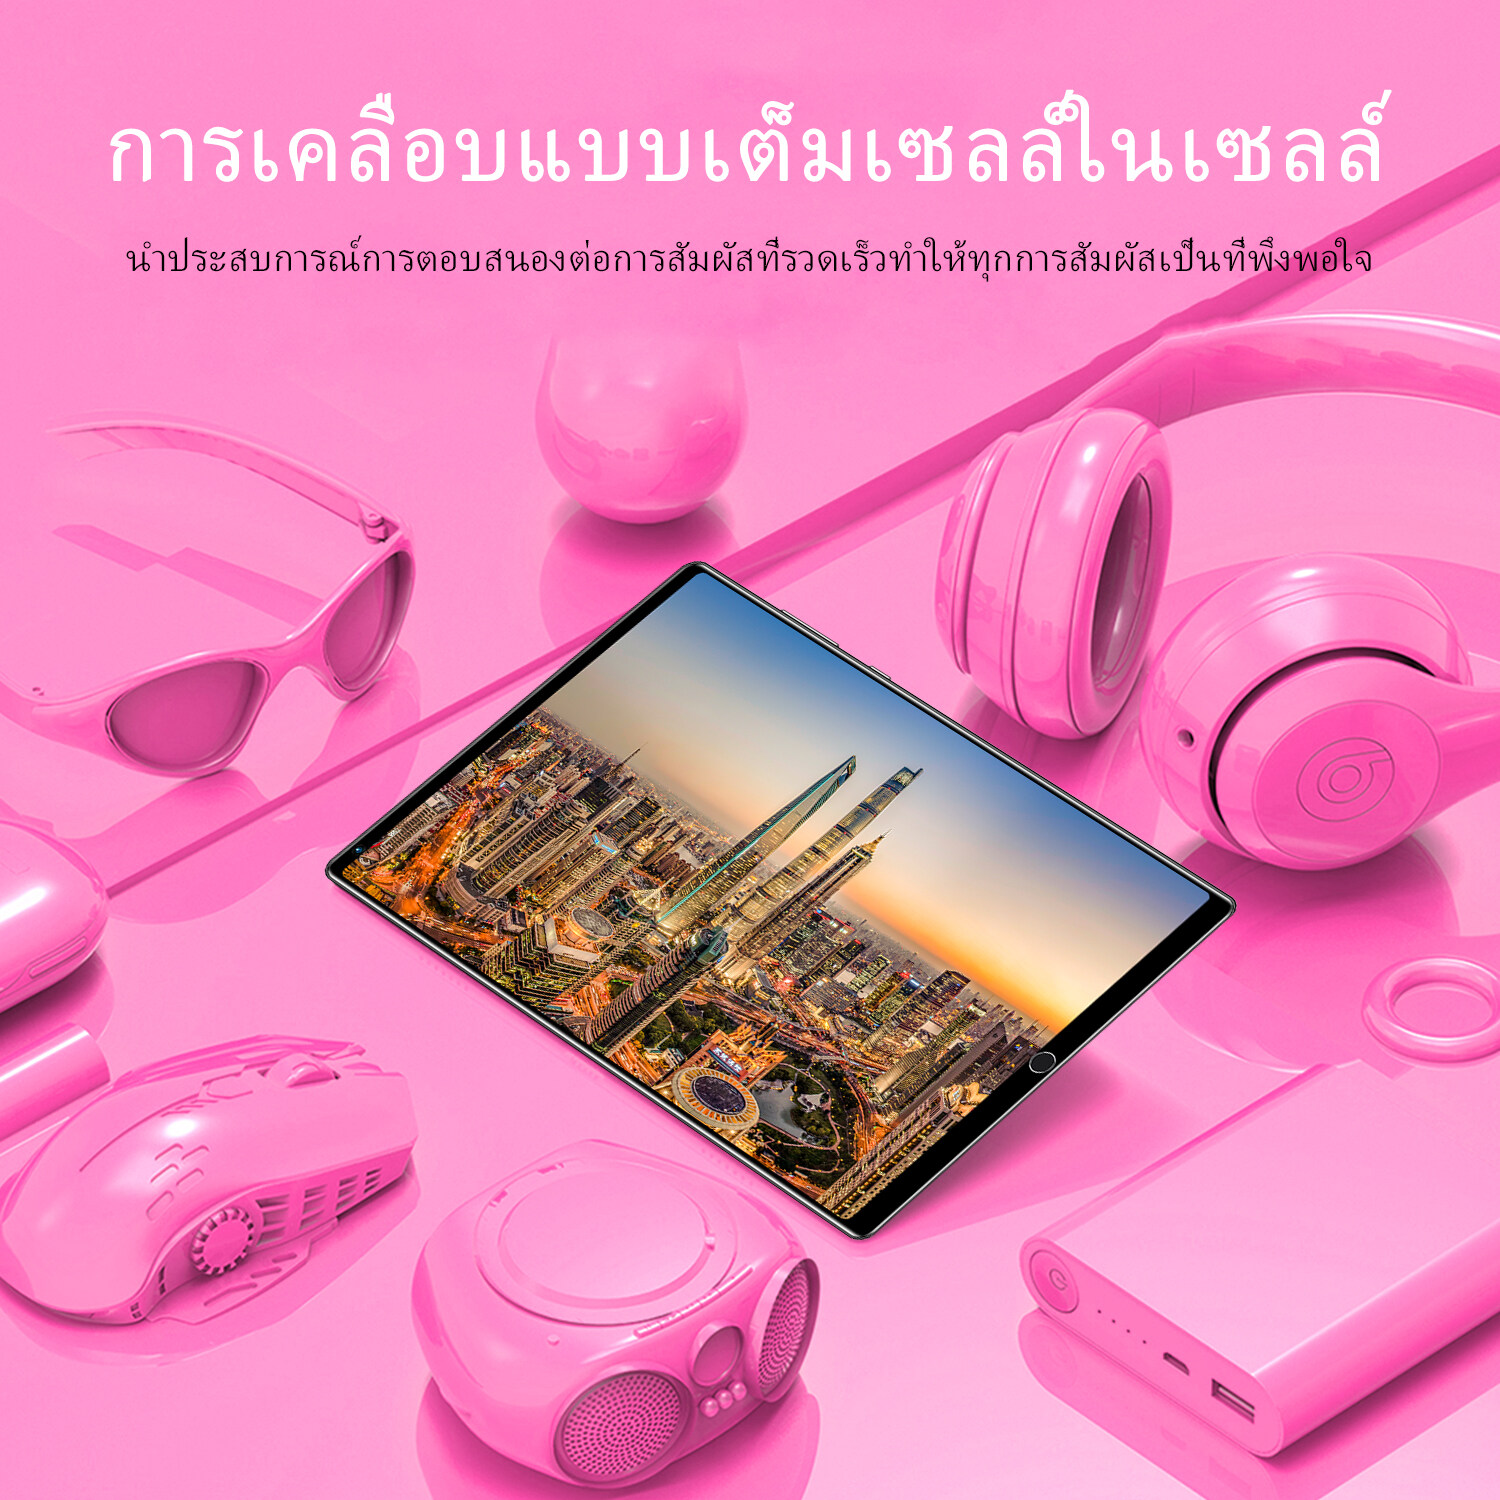 มุมมองเพิ่มเติมของสินค้า Sansumg Tablet แท็บเล็ตโทรได้ 4g/5G แท็บเล็ตถูกๆ Screen Dual Sim 5G Andorid Full HD Tablet จัดส่งฟรี รองรับภาษาไทย หน่วยประมวลผล แท็บเล็ตสำหรับเล่นเกมราคาถูก RAM12G ROM512G ไอเเพ็ด แท็บเล็ต แท็บเล็ตราคาถูกๆ แท็บเล็ตราคาถูกรุ่นล่าสุด แทบเล็ตราคาถูก